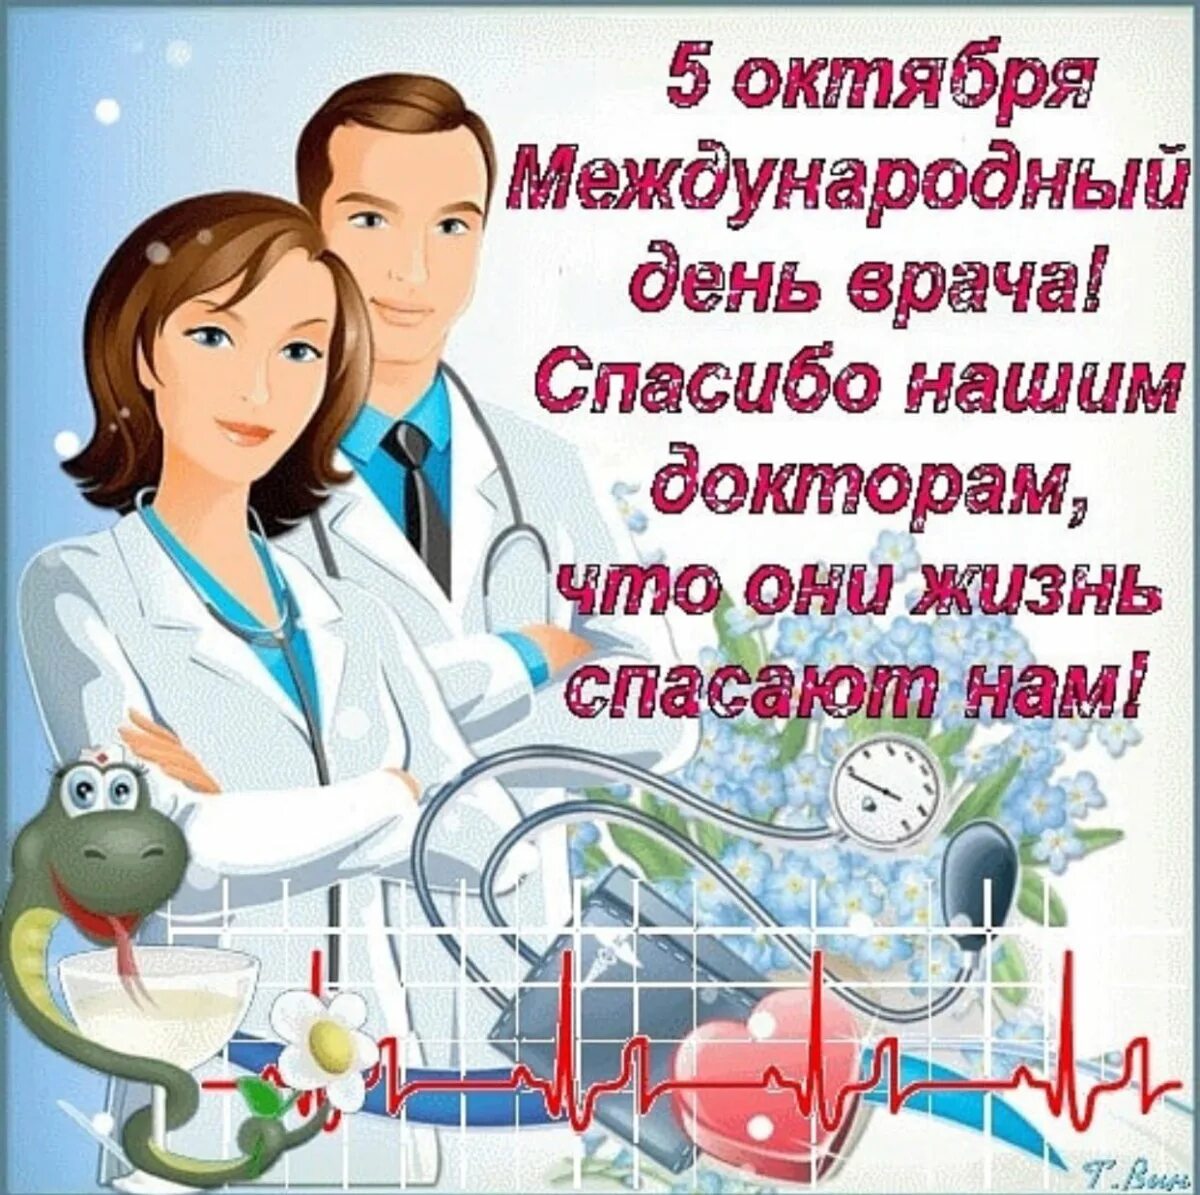 Пожелание день врача. С днем врача поздравления. Поздравление с днем медика. Картинки для поздравления врачей. Плакат ко Дню медицинского работника.